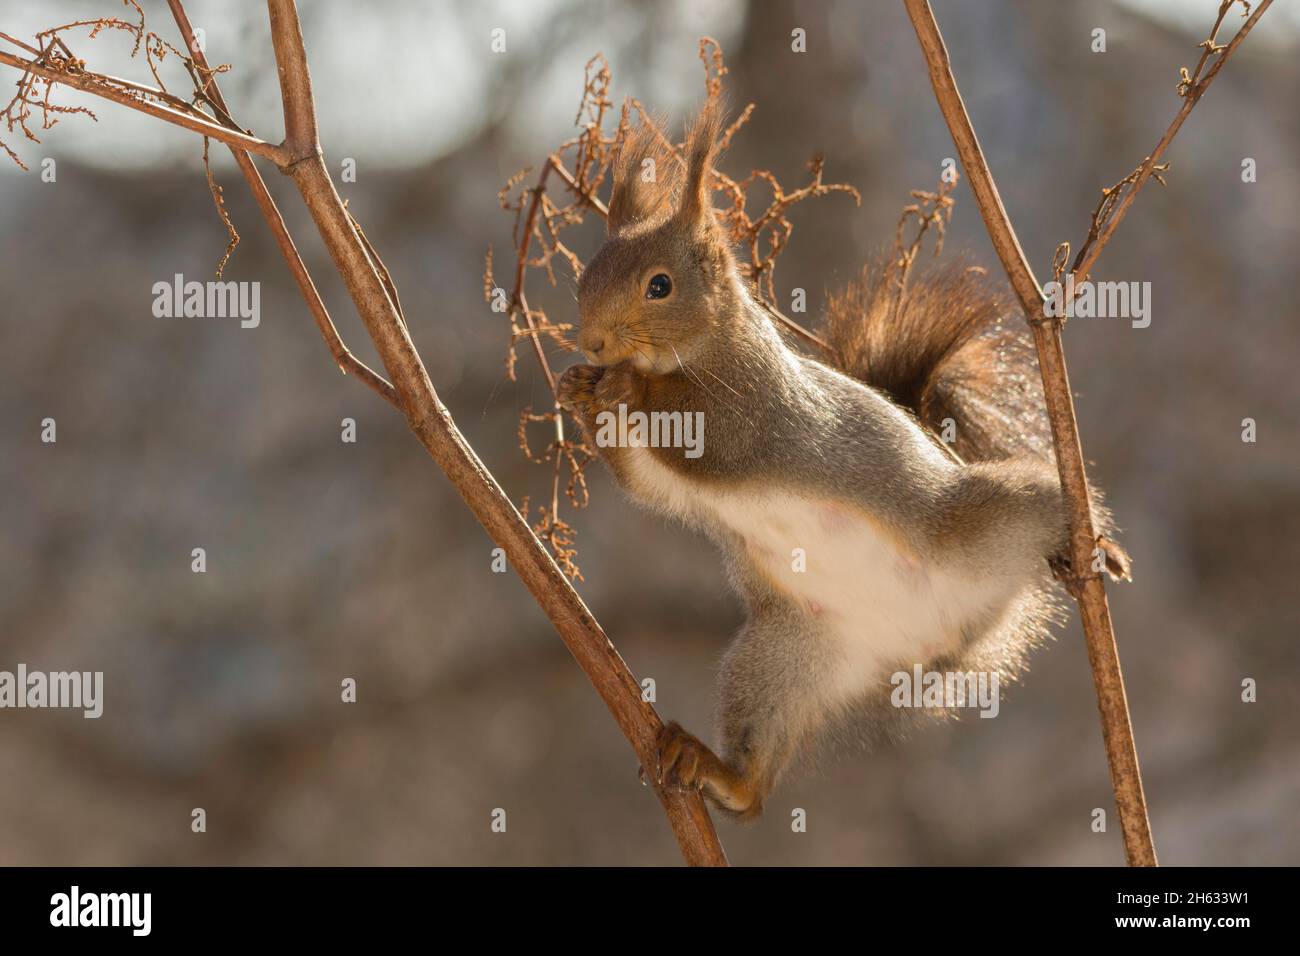 Nahaufnahme eines roten Eichhörnchens, das auf einem Stamm von Pflanzen in einer gespaltenen Position steht Stockfoto